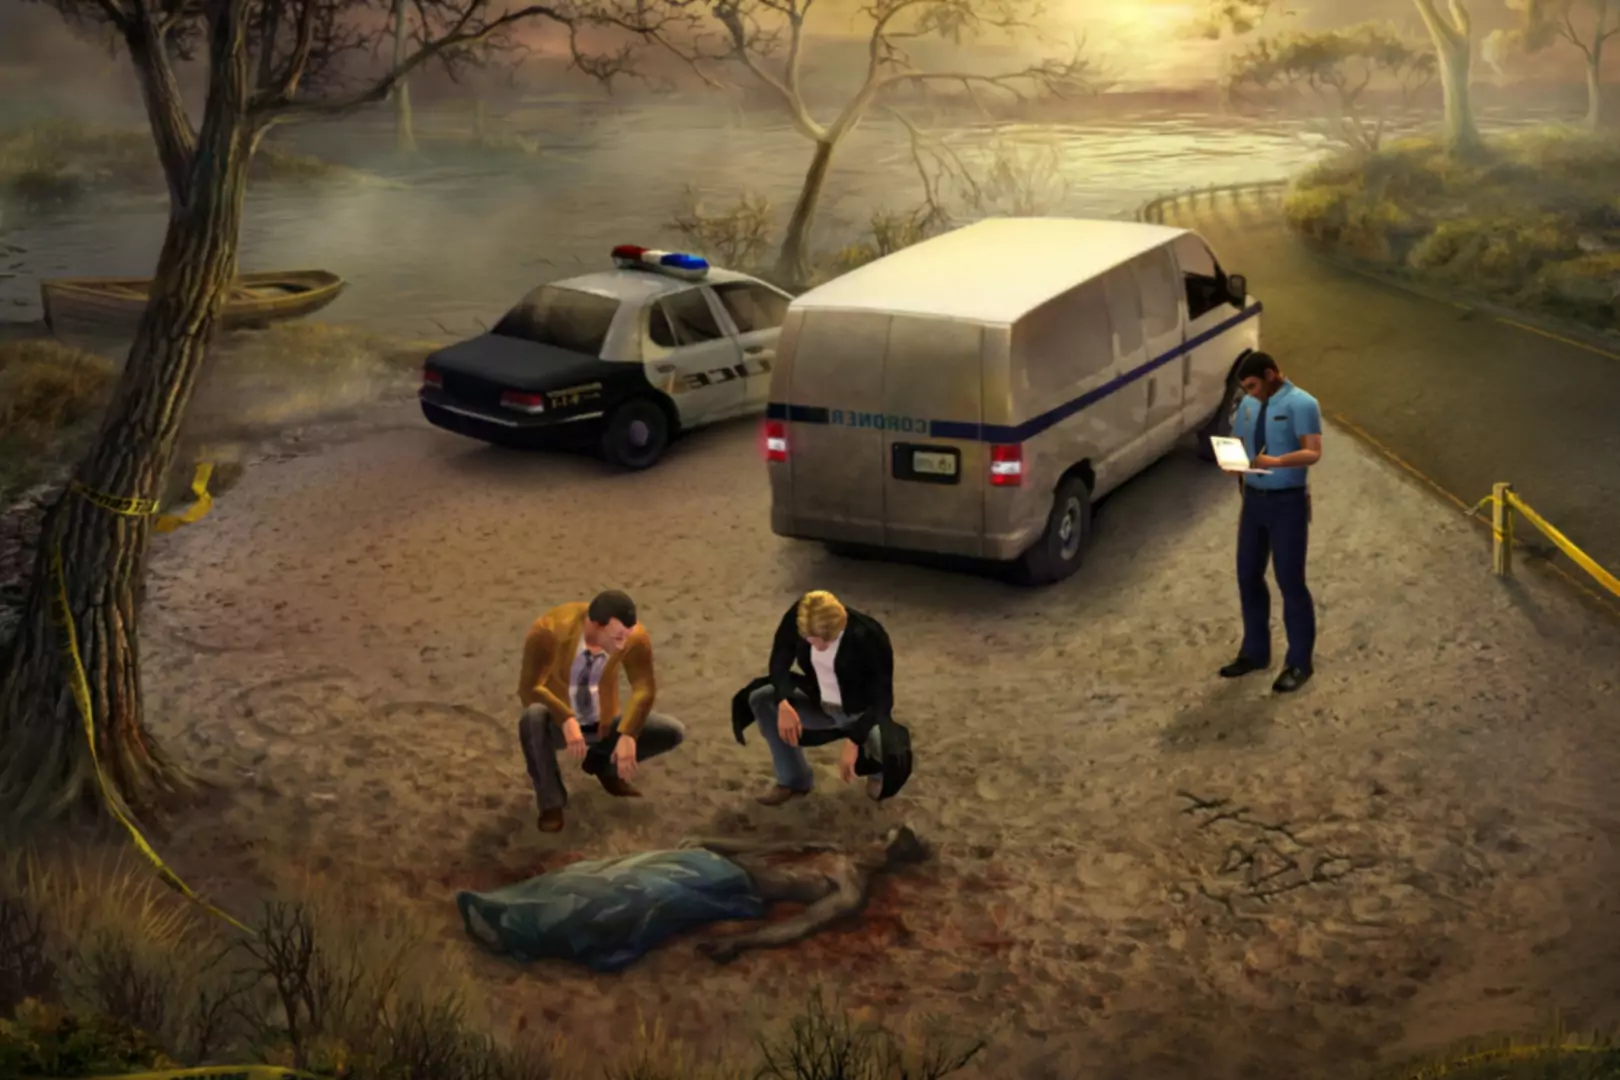 Schermata del gioco Gabriel Knight Sins of the Fathers 20th Anniversary Edition con personaggi e polizia che osservano...